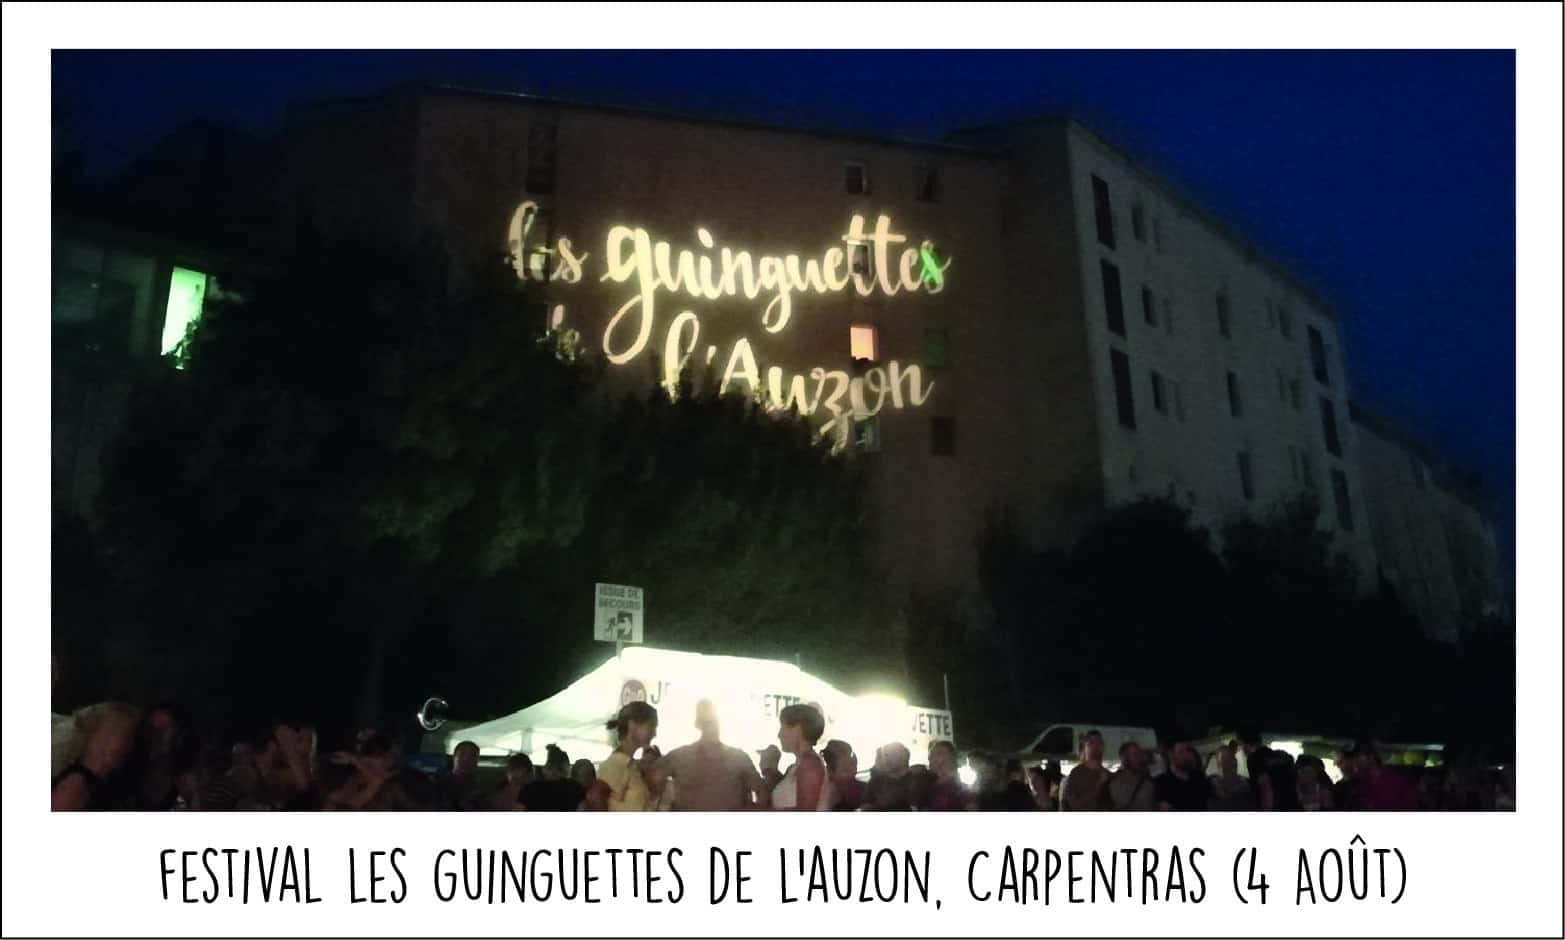 Carte postale festival les guinguettes de l'auzon 2018 carpentras